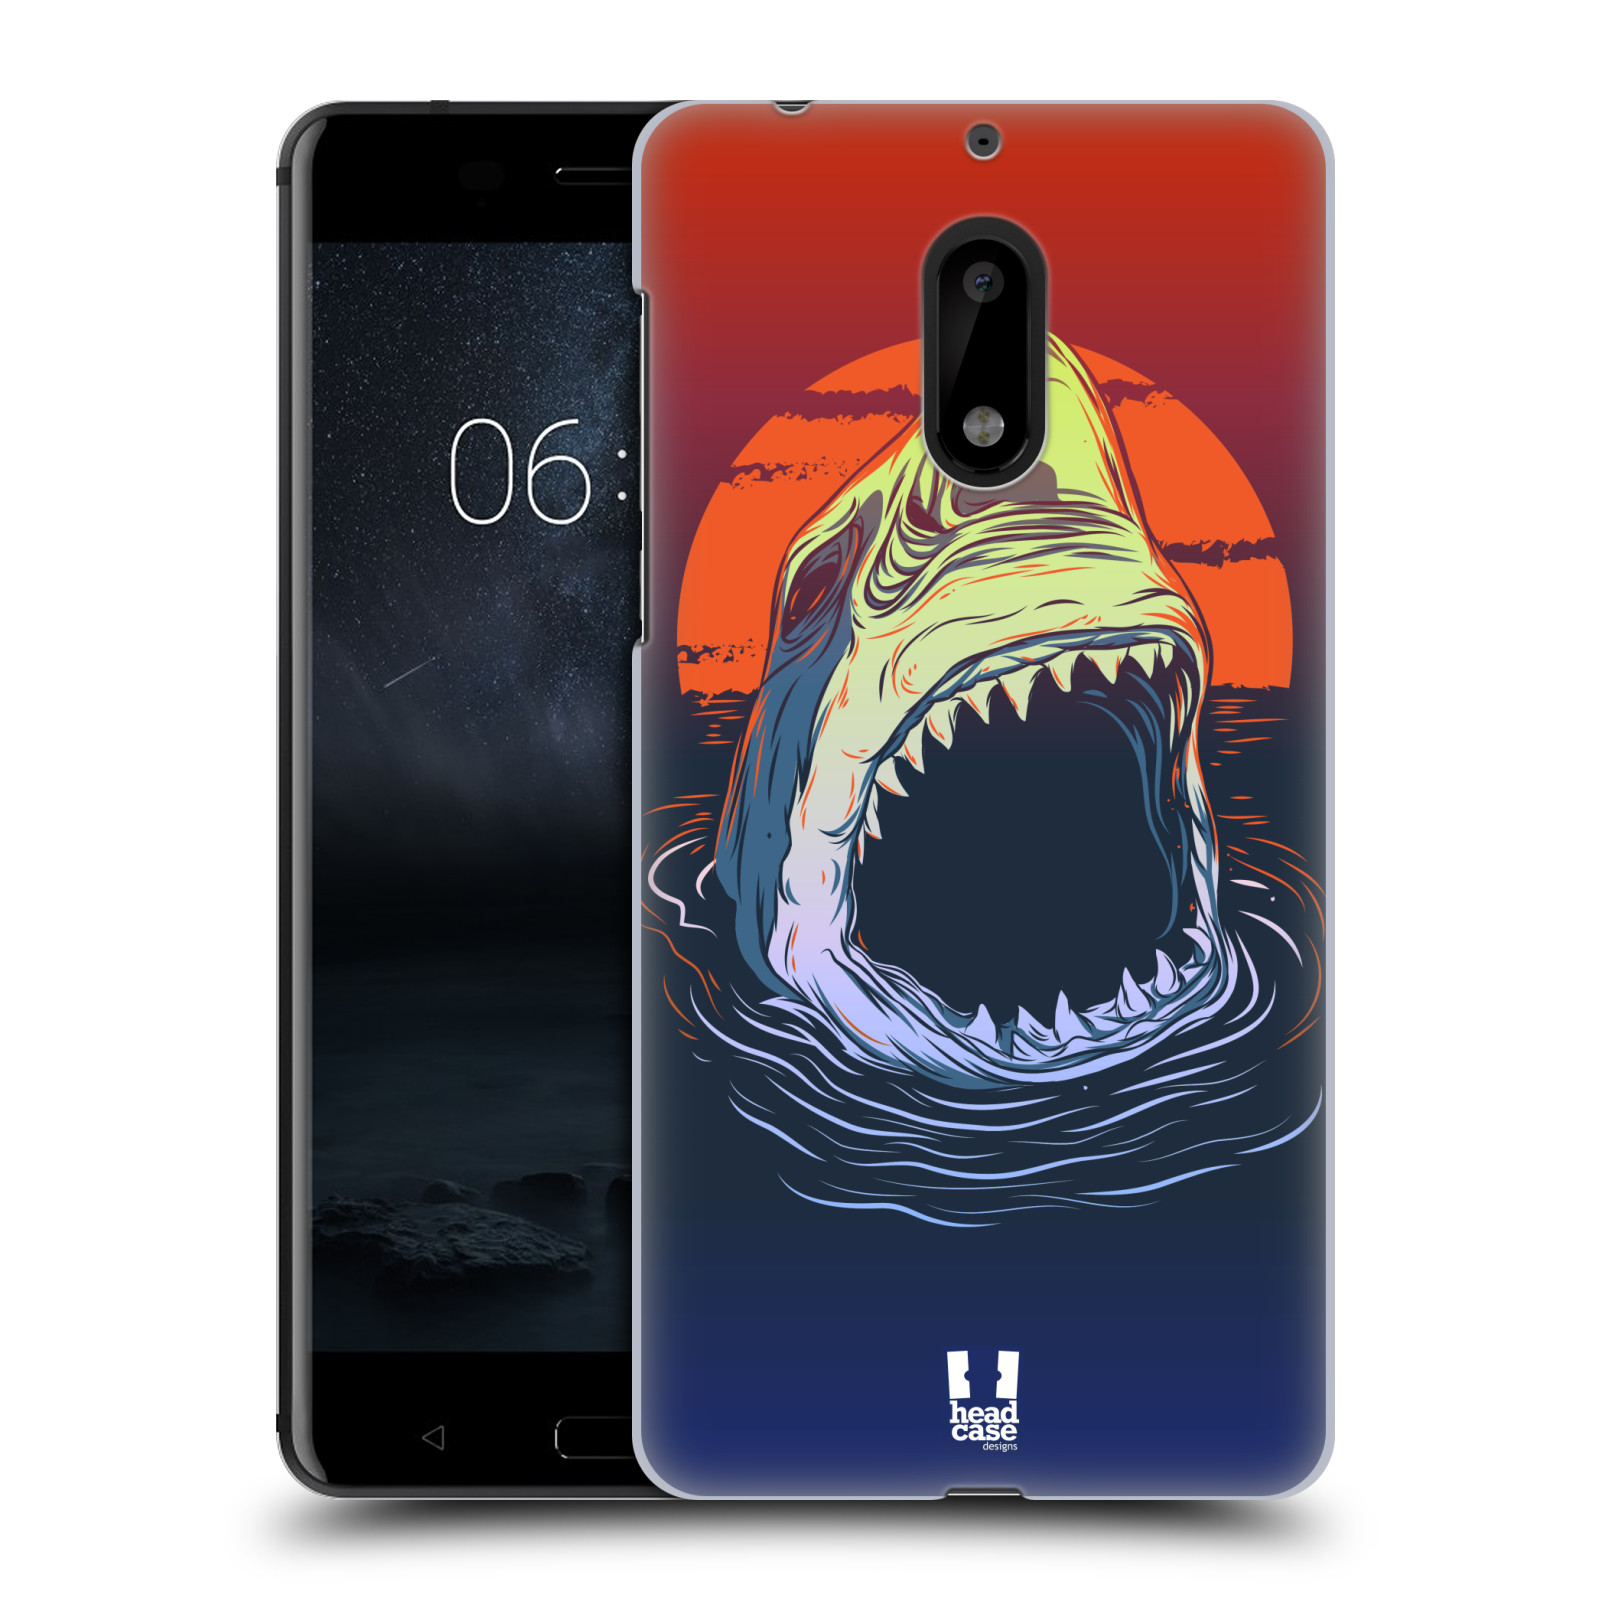 HEAD CASE plastový obal na mobil Nokia 6 vzor mořská monstra žralok